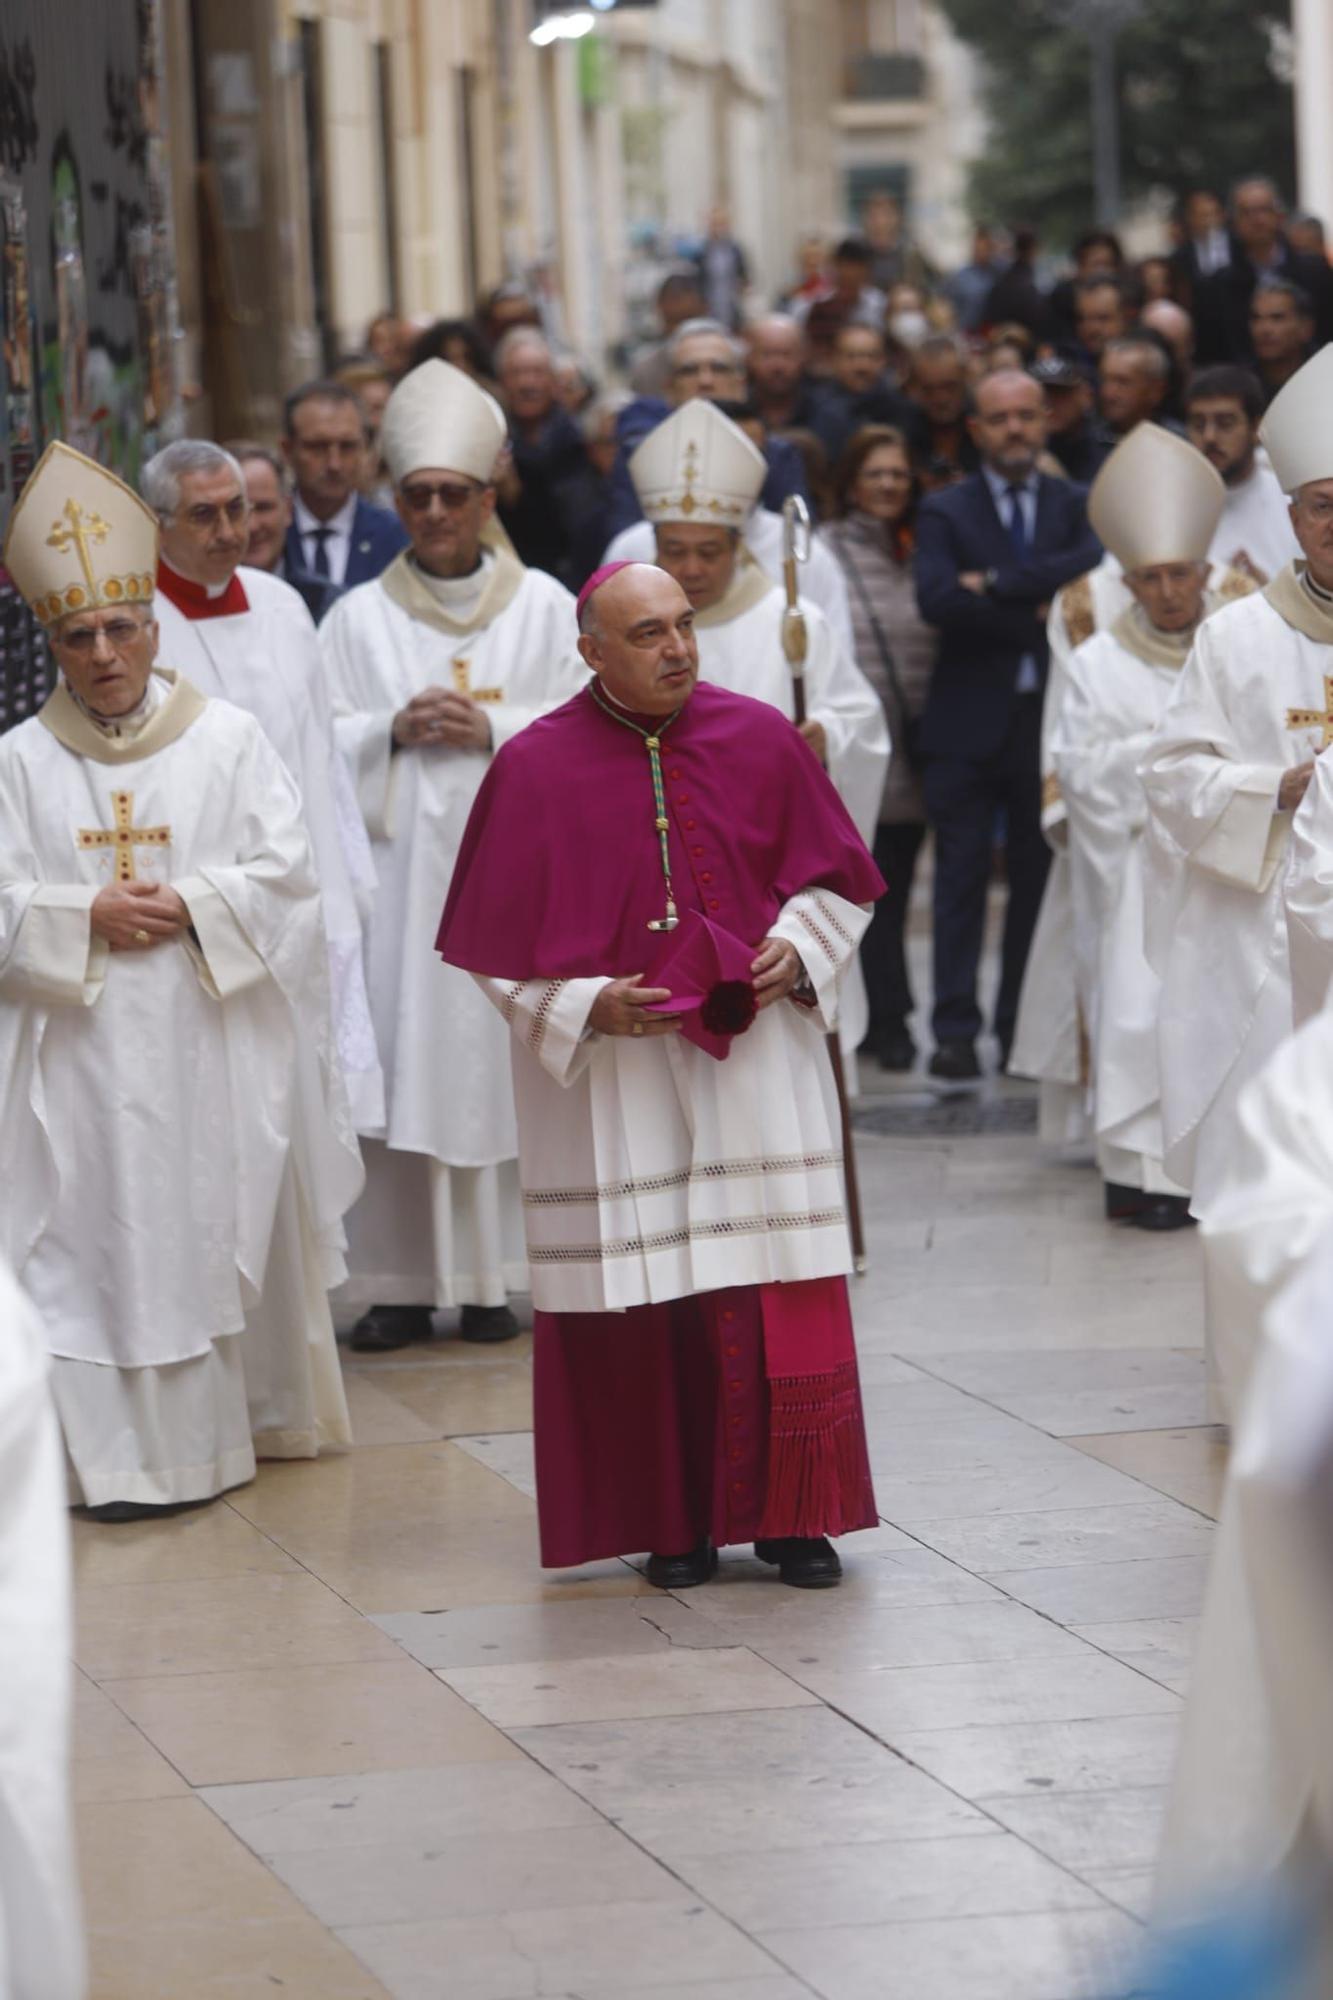 El nuevo arzobispo de València toma posesión en la catedral